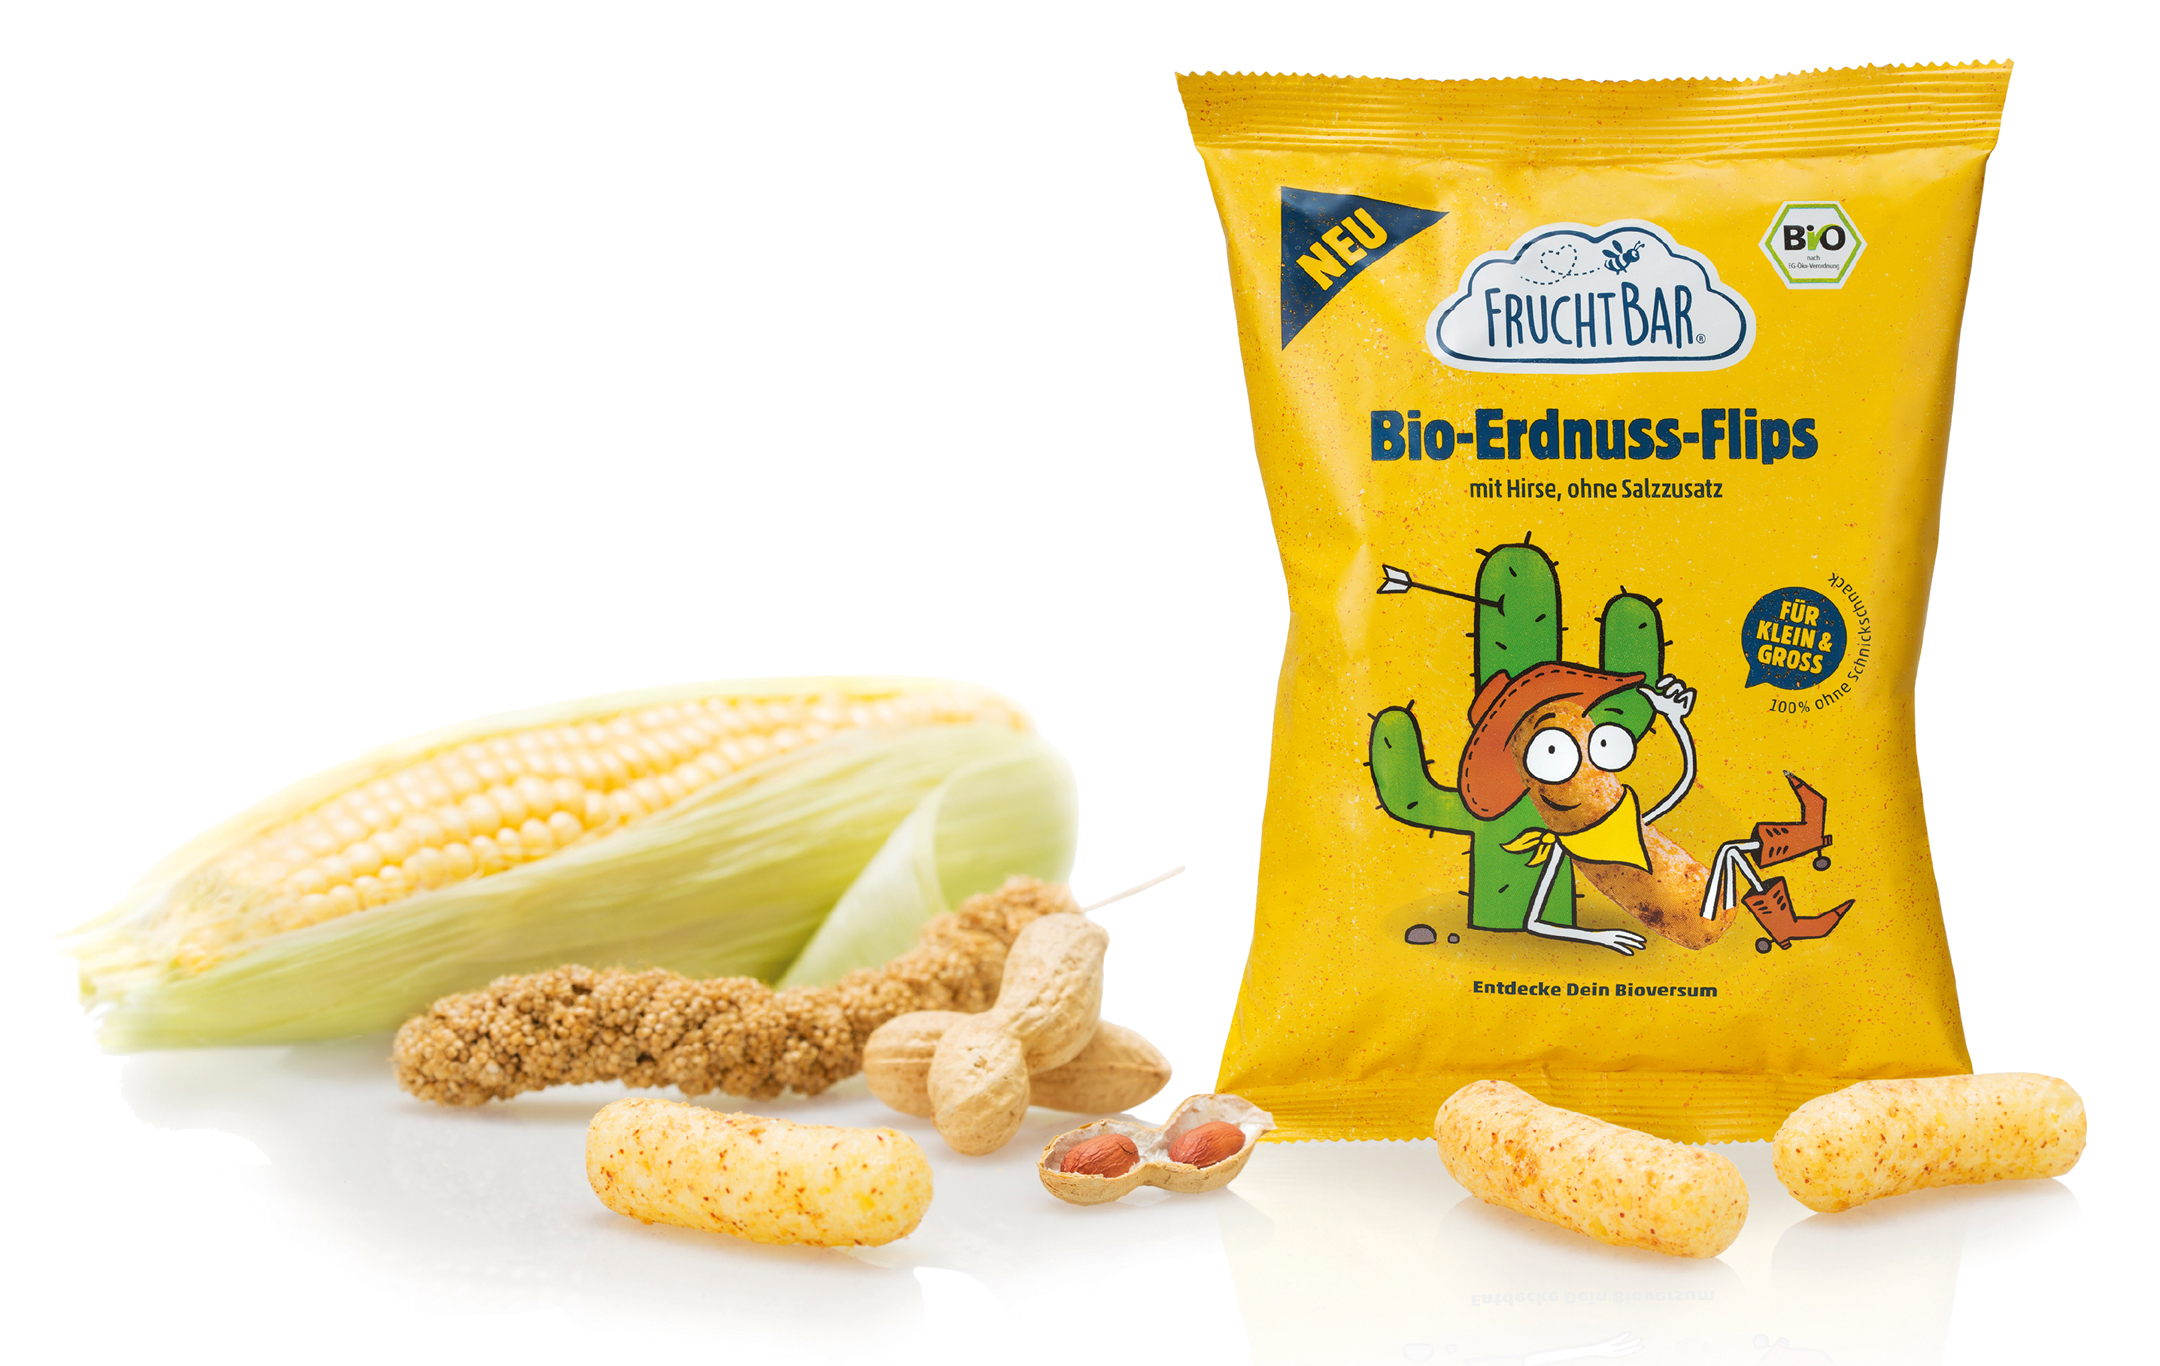 FruchtBar Bio-Erdnuss-Flips Verpackung mit Maiskolben Hirse und Erdnüssen